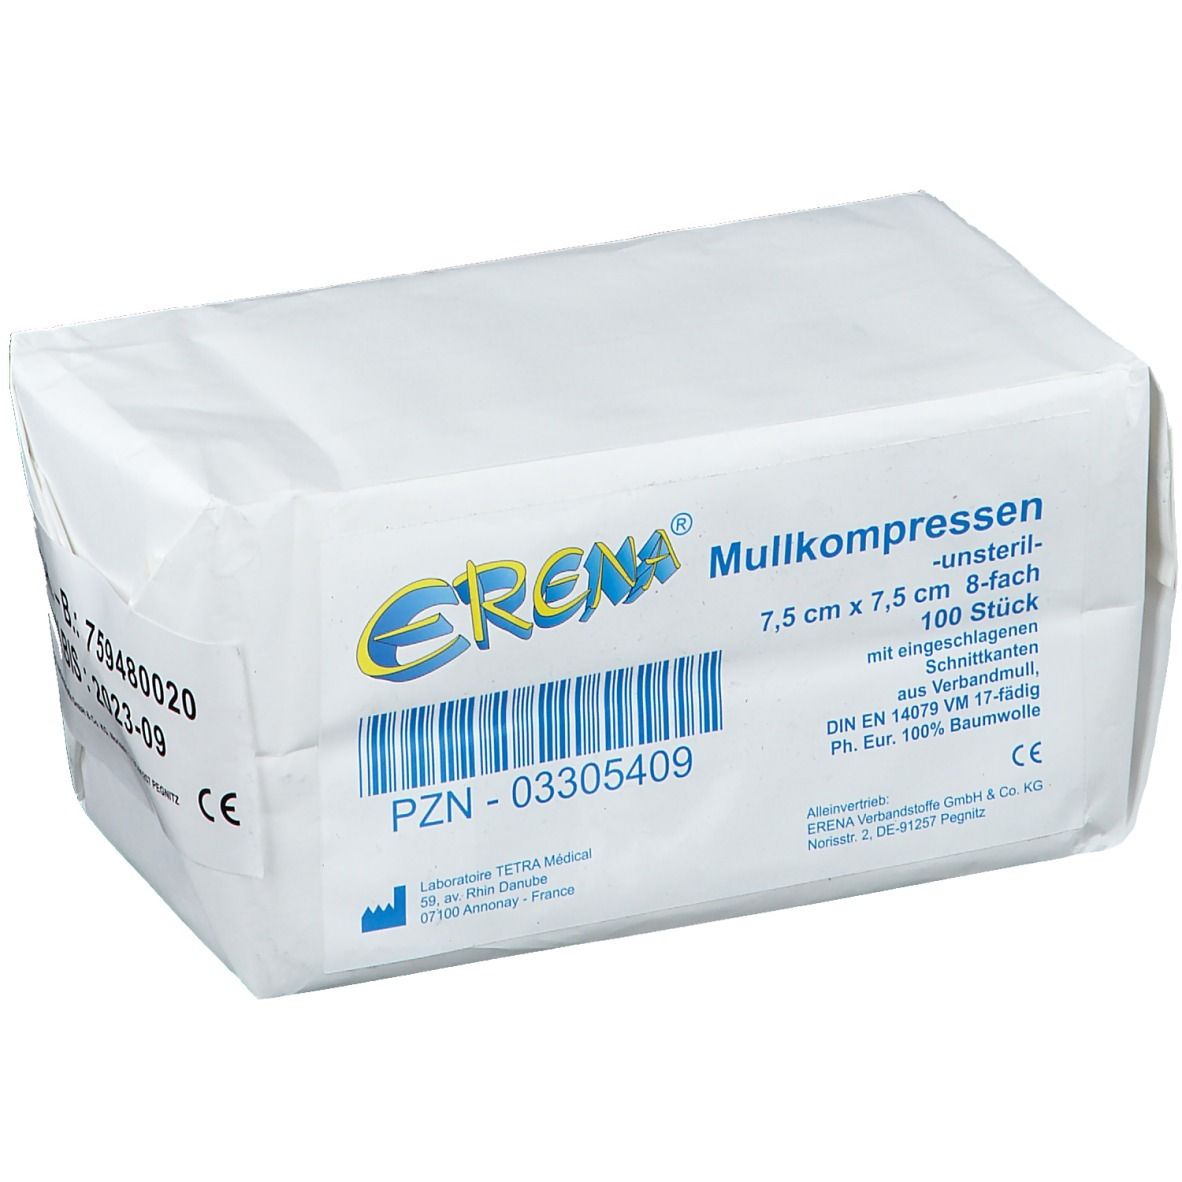 Erena® Mullkompressen 7,5 x 7,5 cm unsteril 8-fach